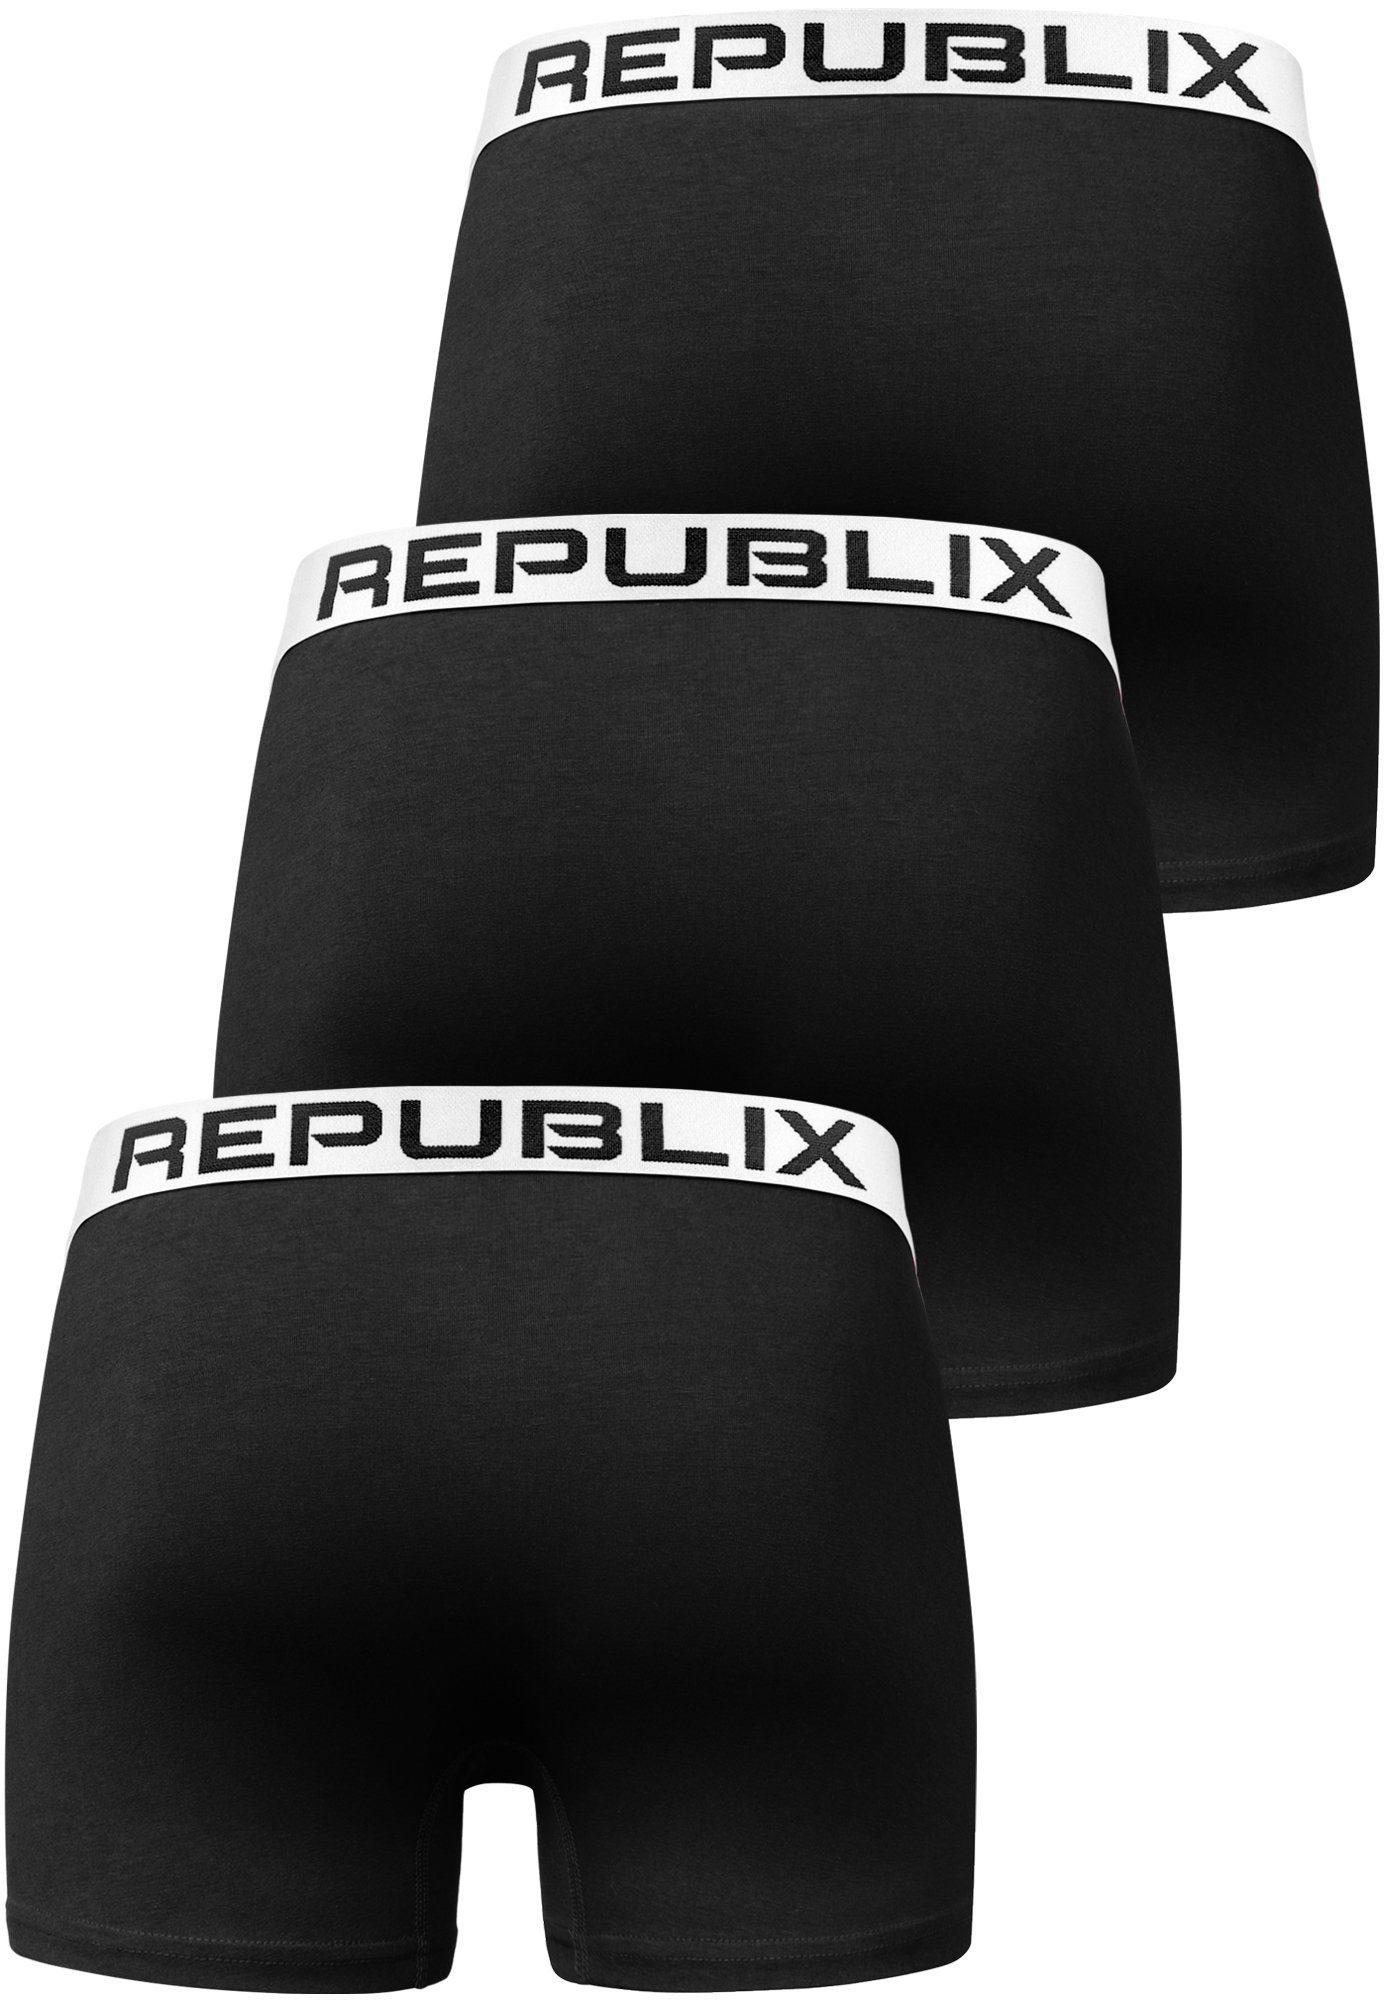 (3er-Pack) Schwarz/Weiß Männer Unterwäsche Baumwolle Herren DON REPUBLIX Boxershorts Unterhose